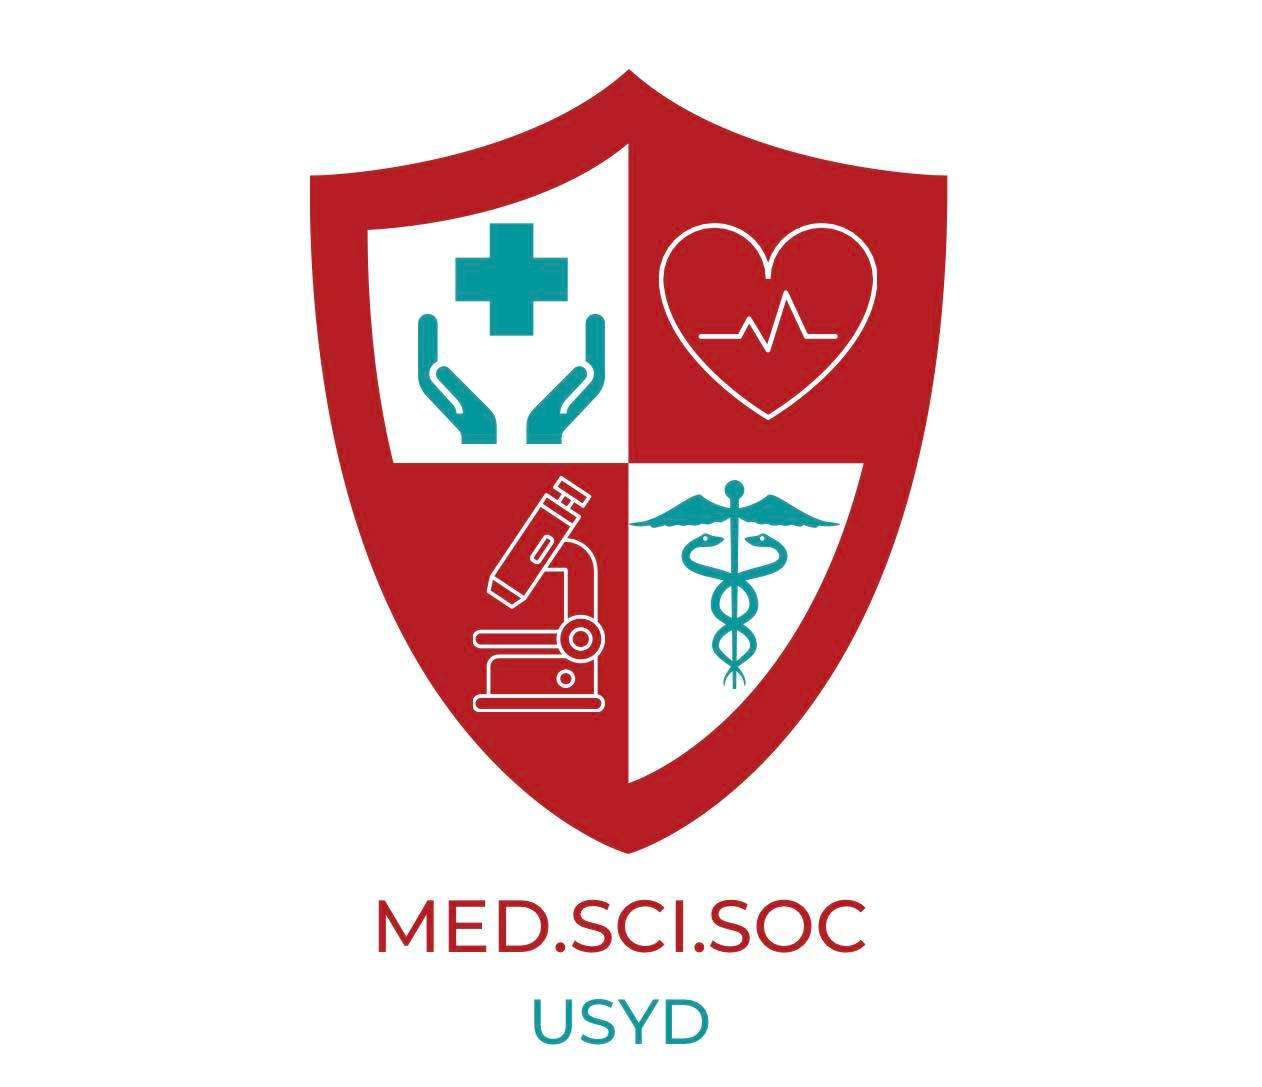 Sydney University Medical Science Society